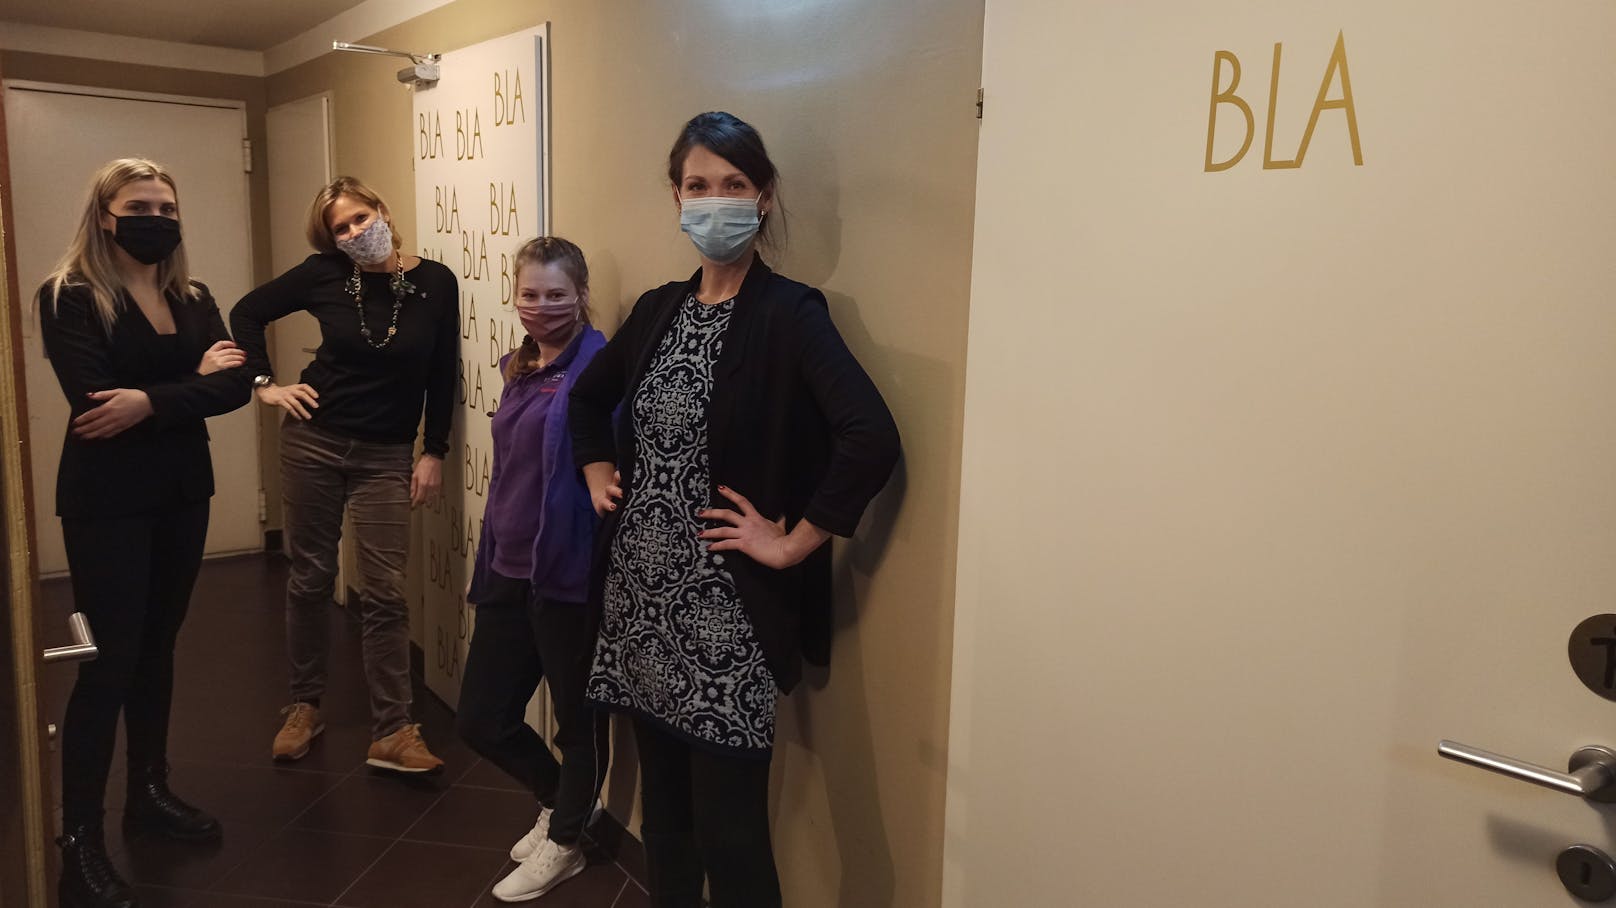 Hotel-Chefin Katharina Kluss und ihre Mitarbeiterinnen sehen die WC-Aufschrift mit Humor.